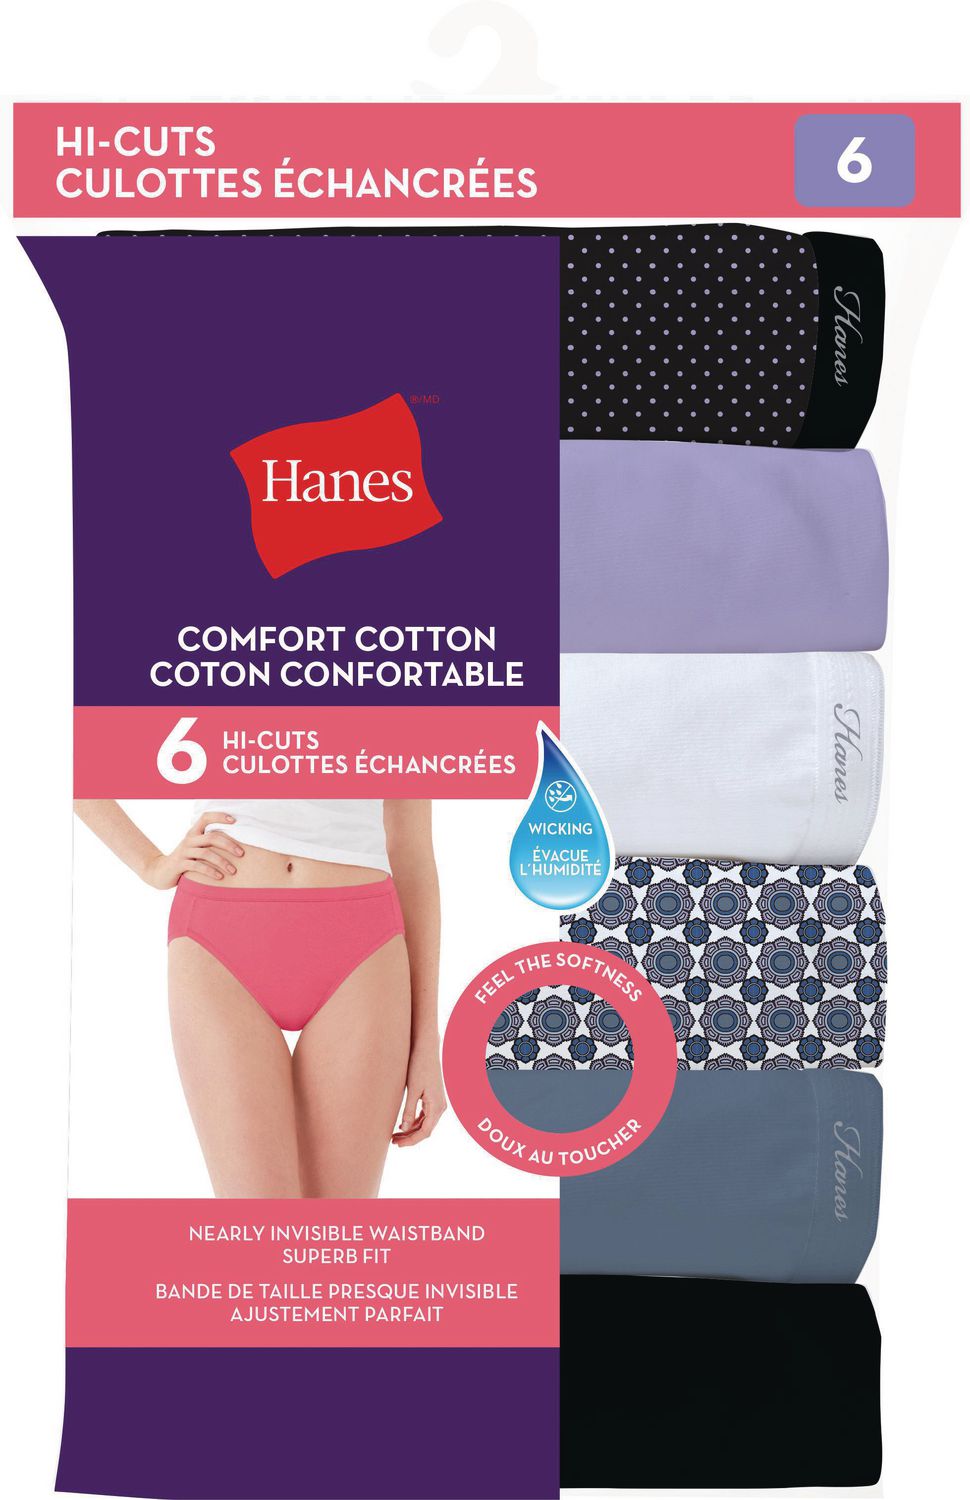 Fingerhut - Hanes Women's Classic Brief Underwear - 6-pk.